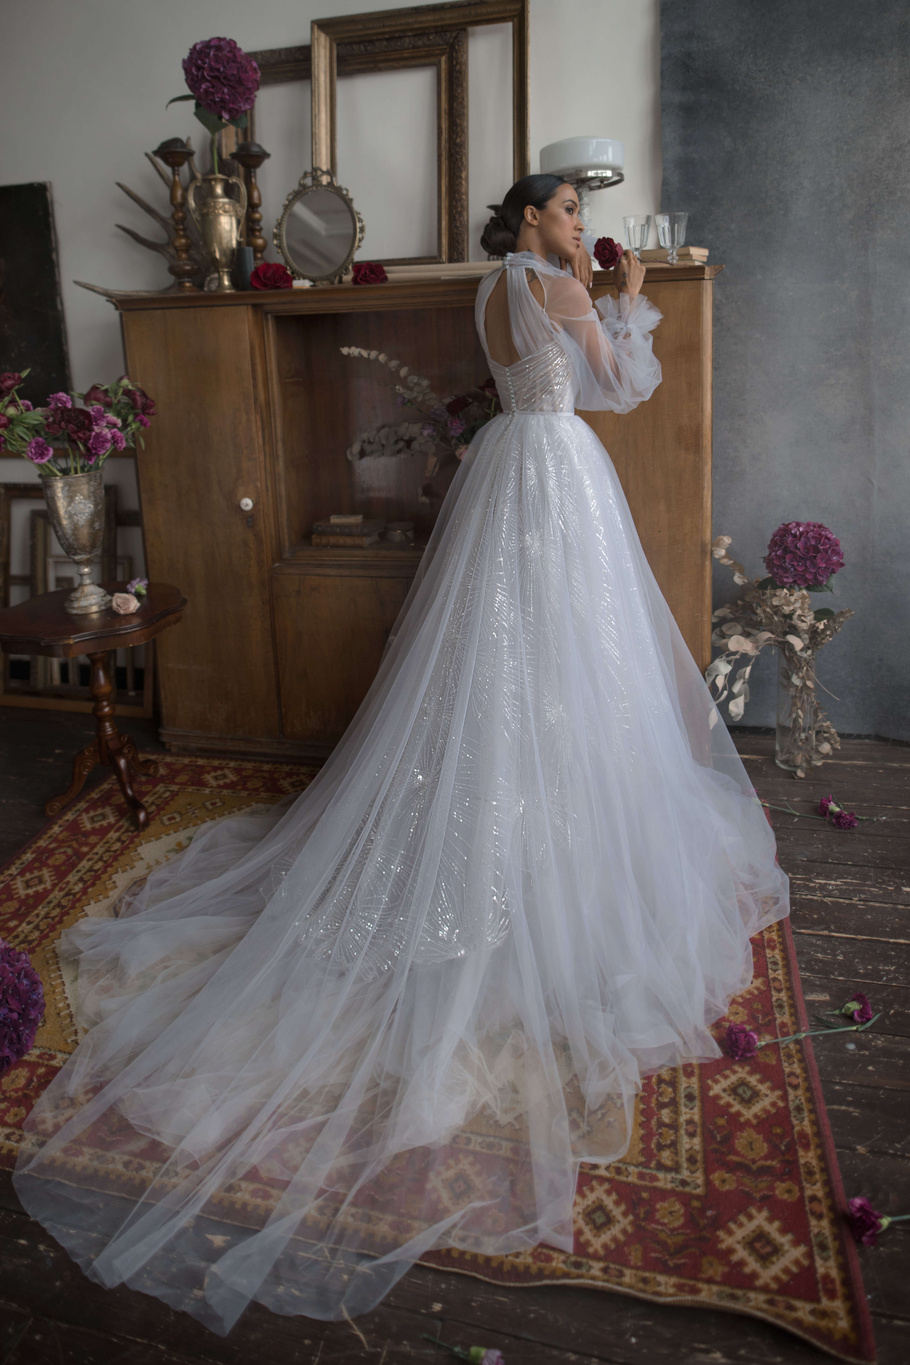 Купить свадебное платье «Остин» Бламмо Биамо из коллекции Нимфа 2020 года в Москве